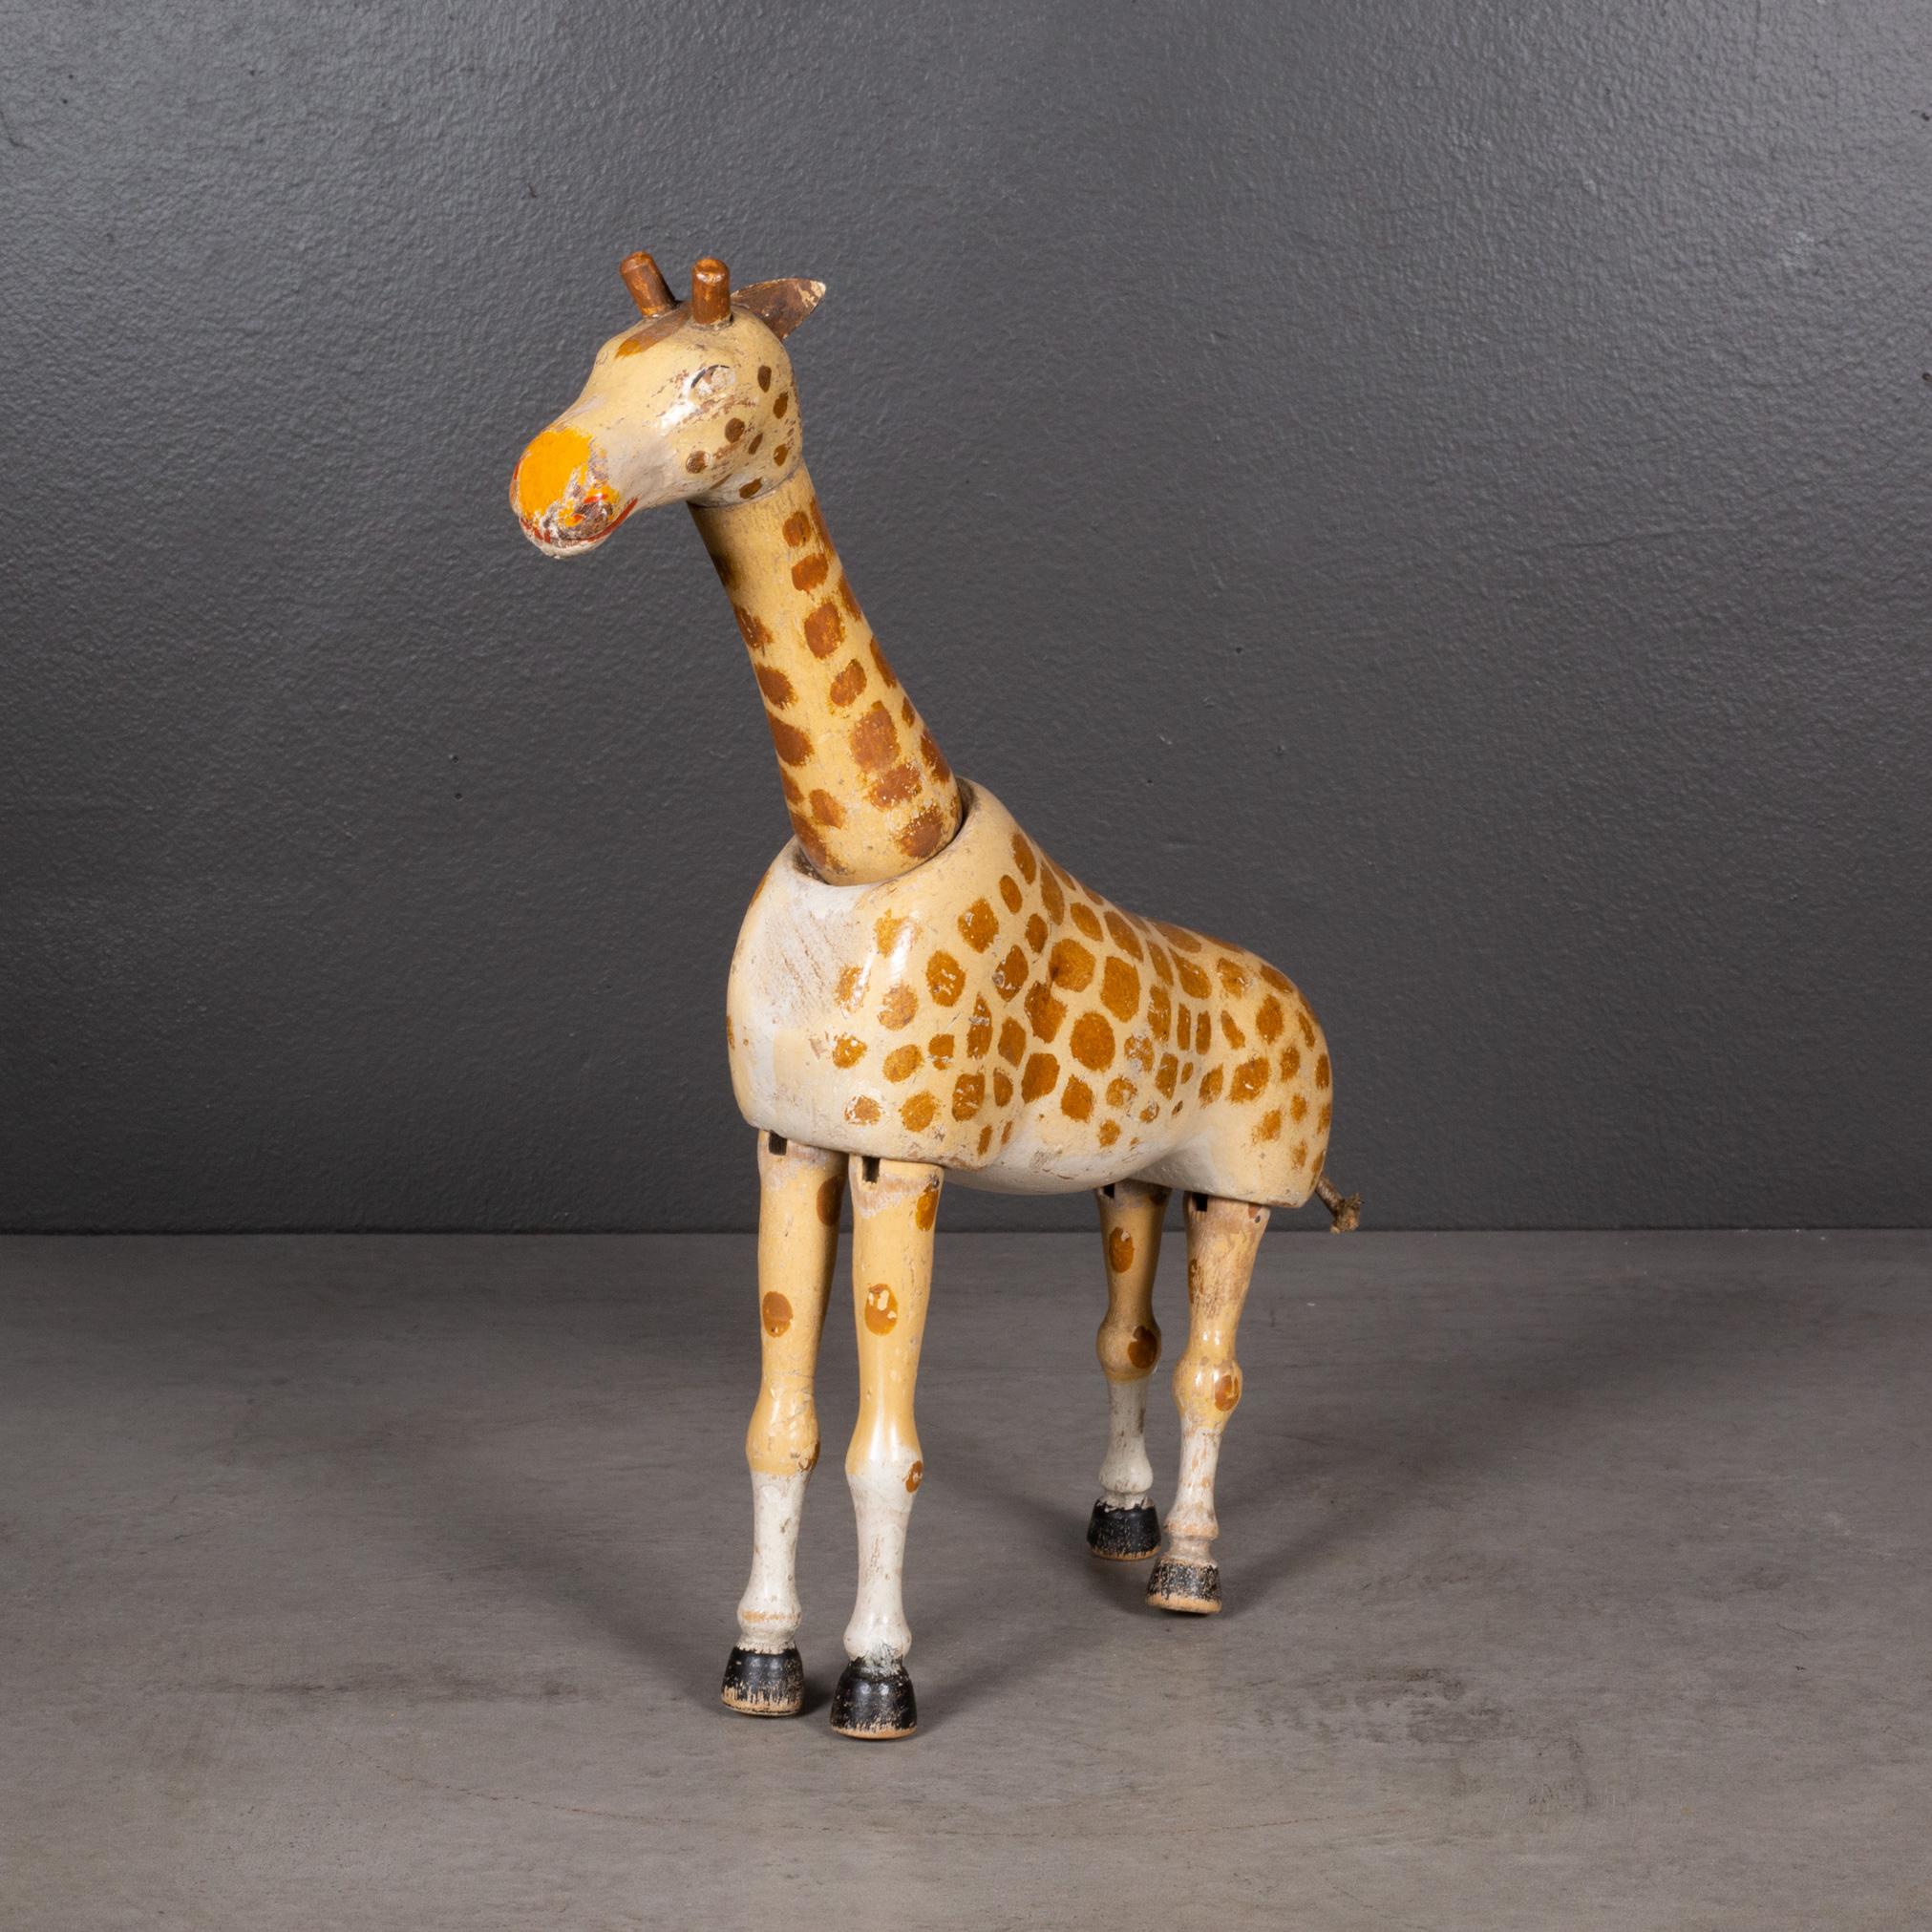 À PROPOS DE

Girafe en bois articulée fabriquée dans les années 1900 par la Schoenhut Piano Company dans le cadre de la collection Humpty Dumpty Circus. Fabriqué en bois sculpté avec une finition originale peinte à la main et des articulations pour